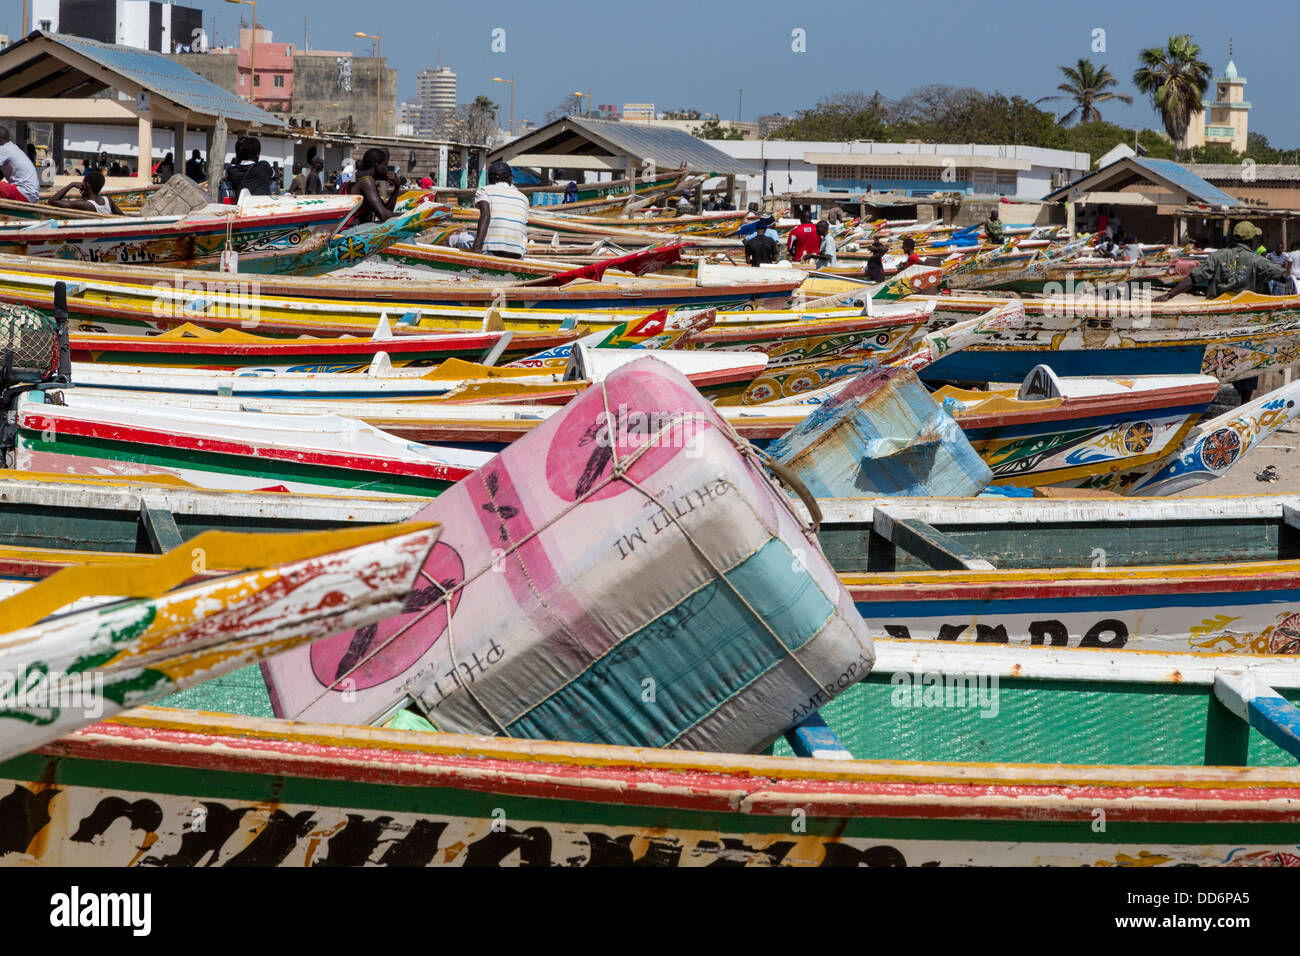 Dakar, Sénégal. Bateaux de pêche sur la plage de Soumbédioune Village de pêcheurs, maintenant une partie de la métropole de Dakar. Banque D'Images